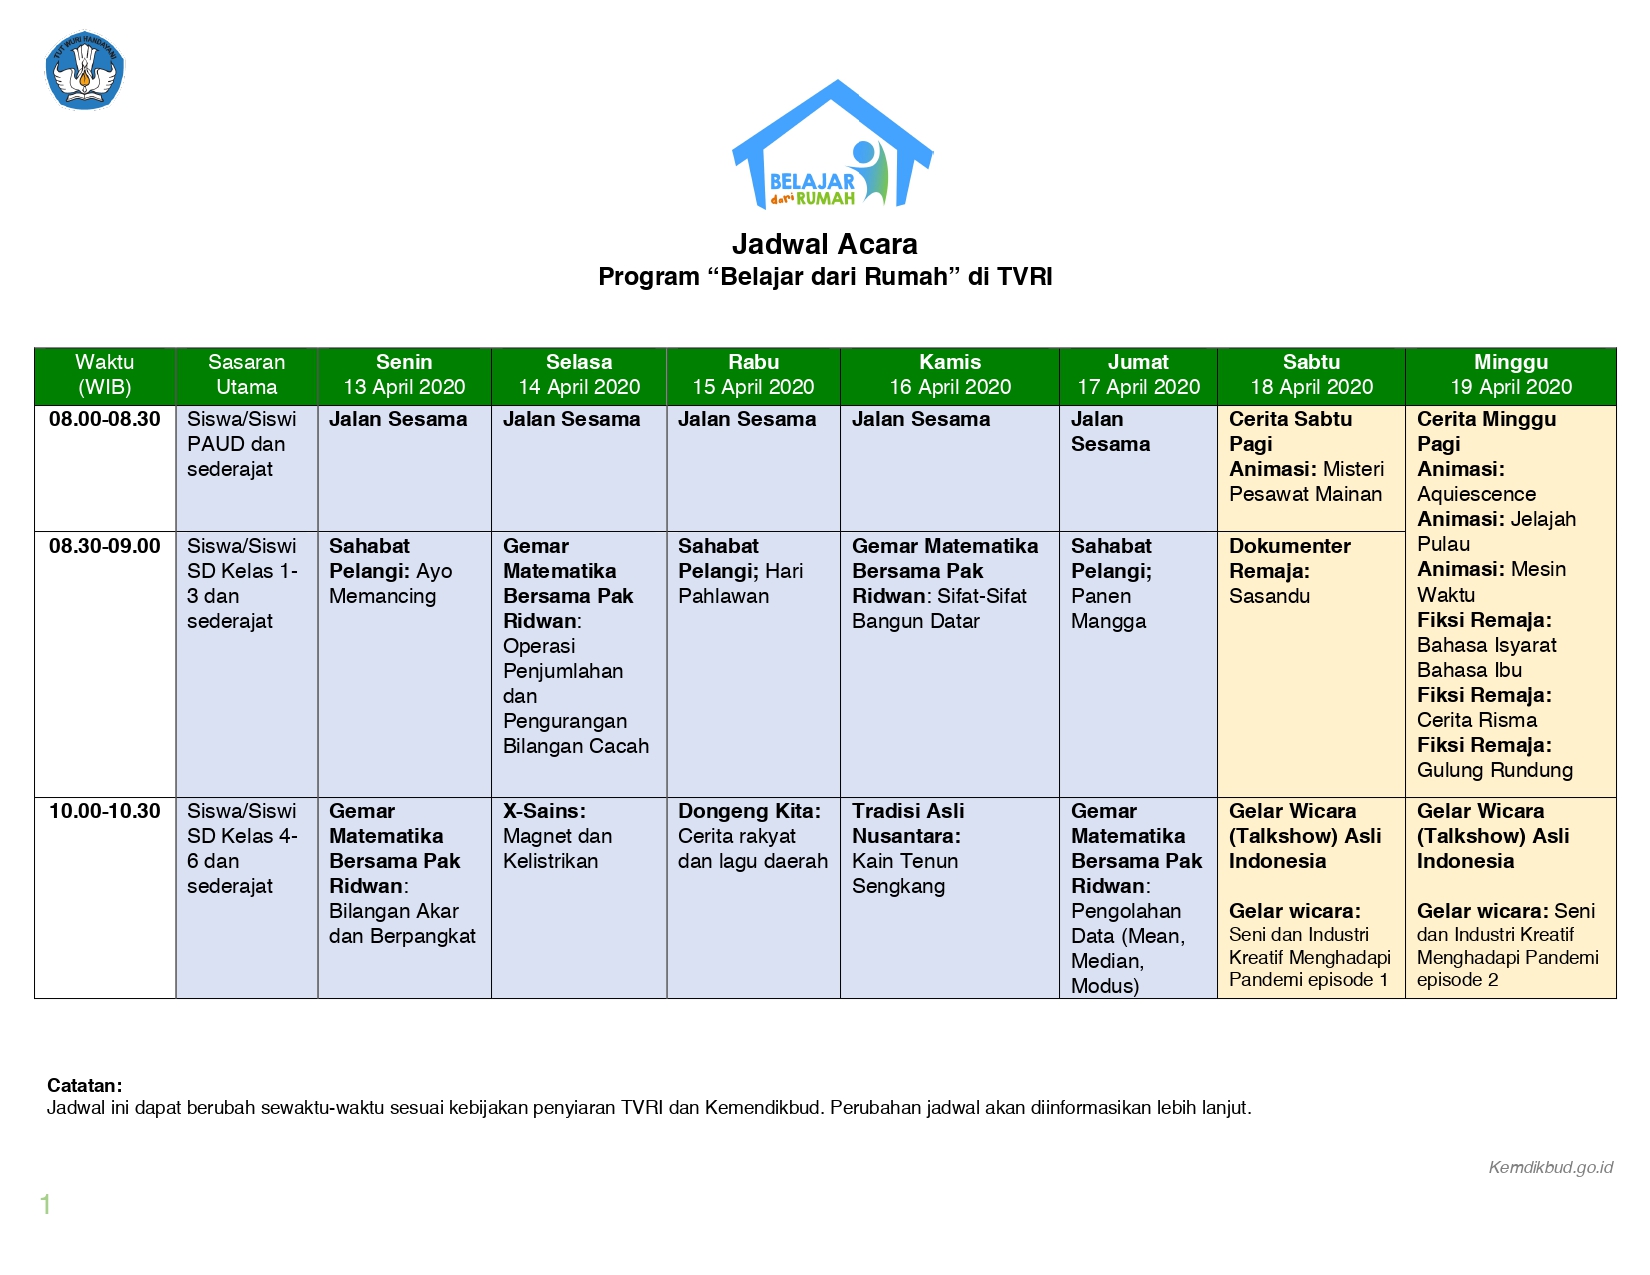 Berikut Jadwal Acara Program Belajar dari Rumah yang Tayang di TVRI